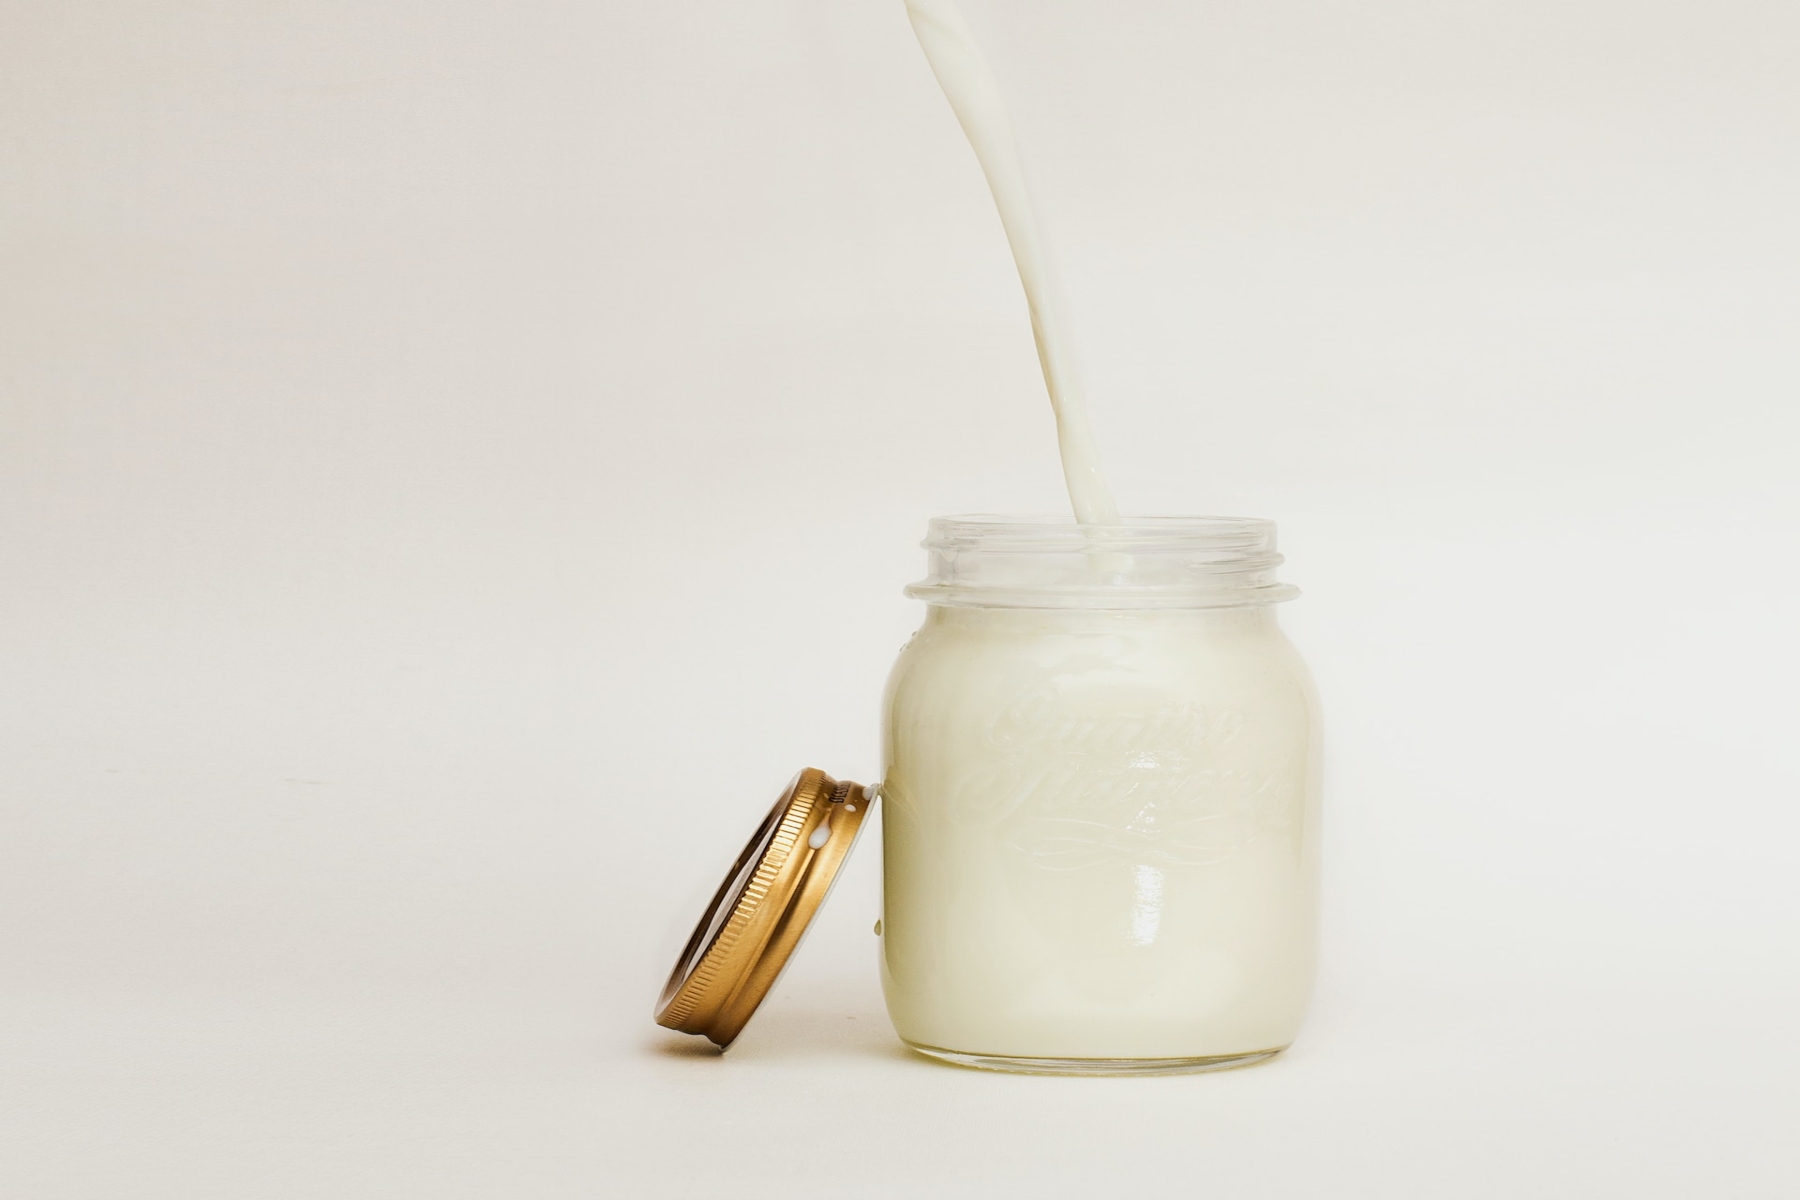 Μητρικό γάλα: Η ζάχαρη από το μητρικό γάλα μπορεί να βοηθήσει στην πρόληψη λοιμώξεων στα παιδιά